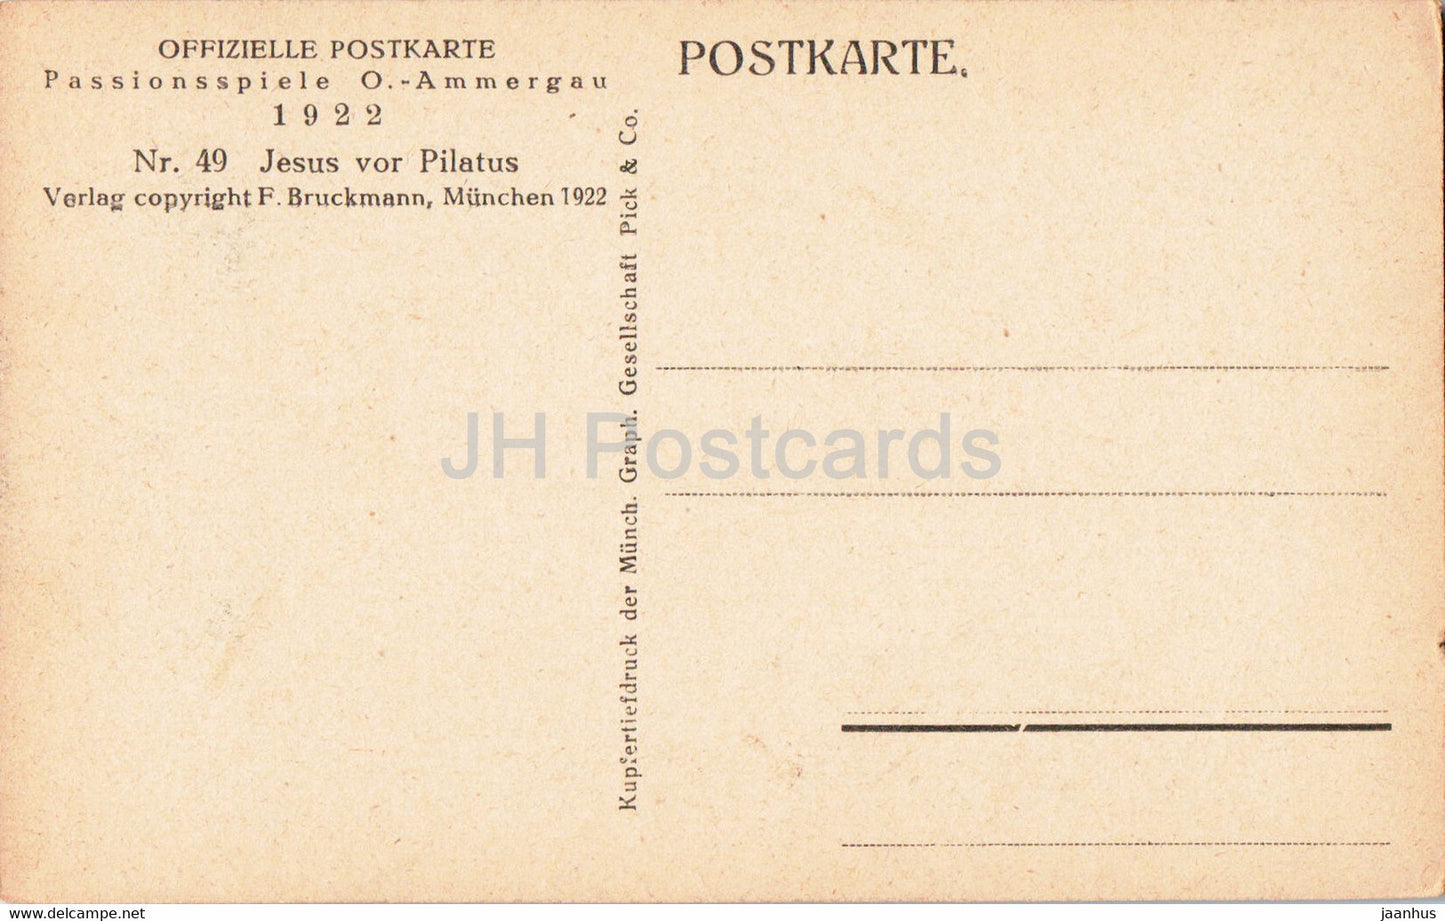 Passionsspiele O Ammergau 1922 - Jesus Vor Pilatus - Schauspieler - Theater - alte Postkarte - Deutschland - unbenutzt